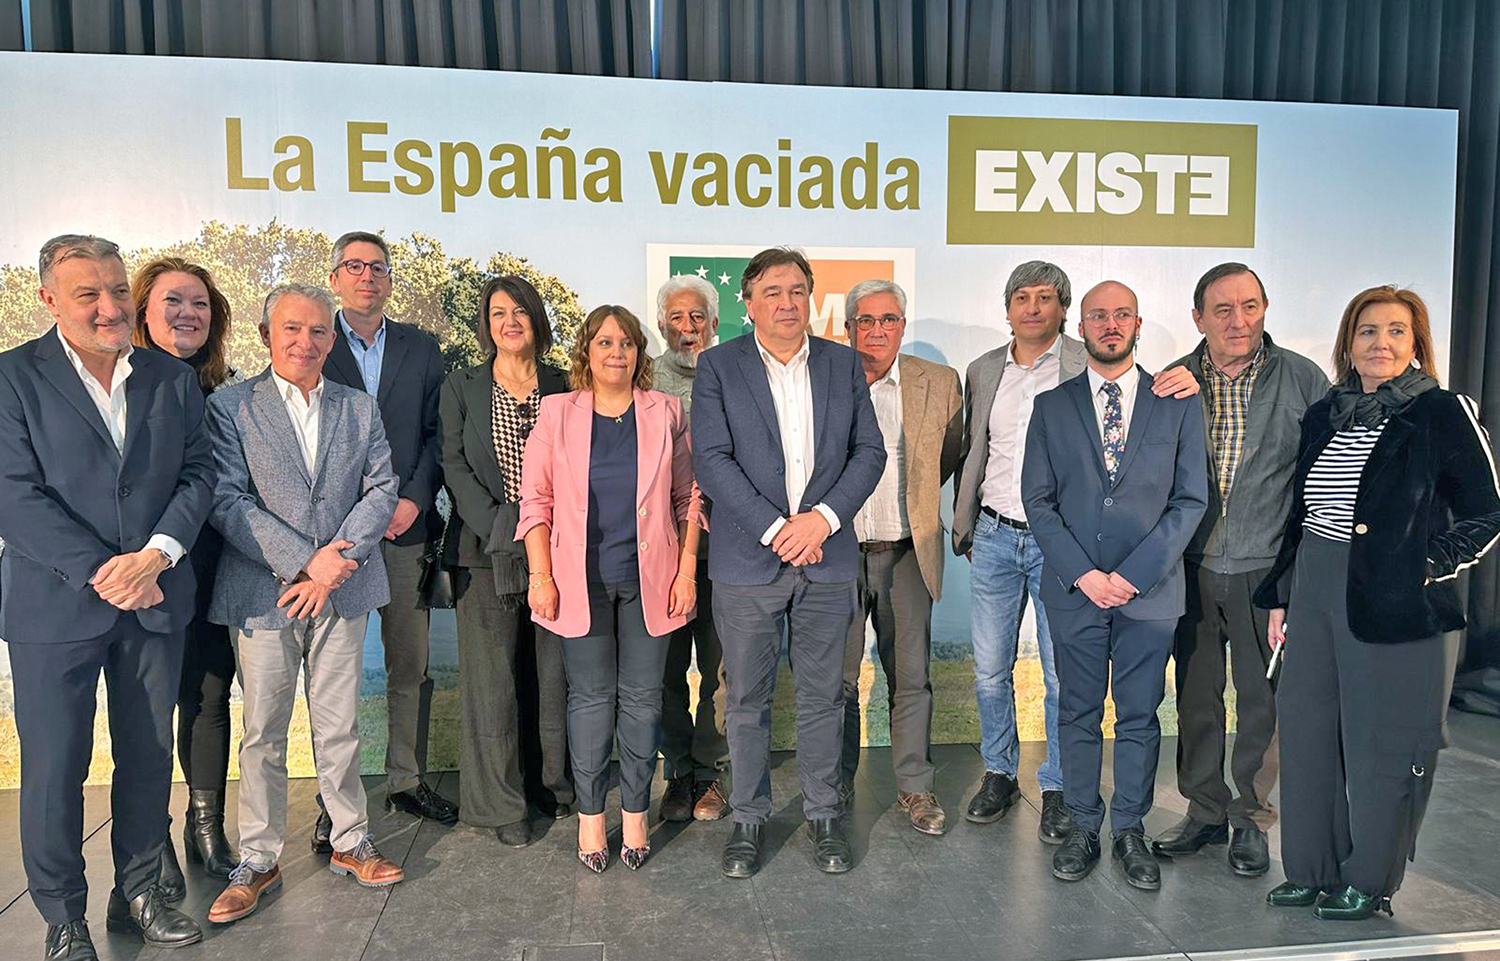 Jaén Merece Más concurrirá a las próximas elecciones europeas en la candidatura ‘Existe’, la coalición formada por los partidos de la España vaciada